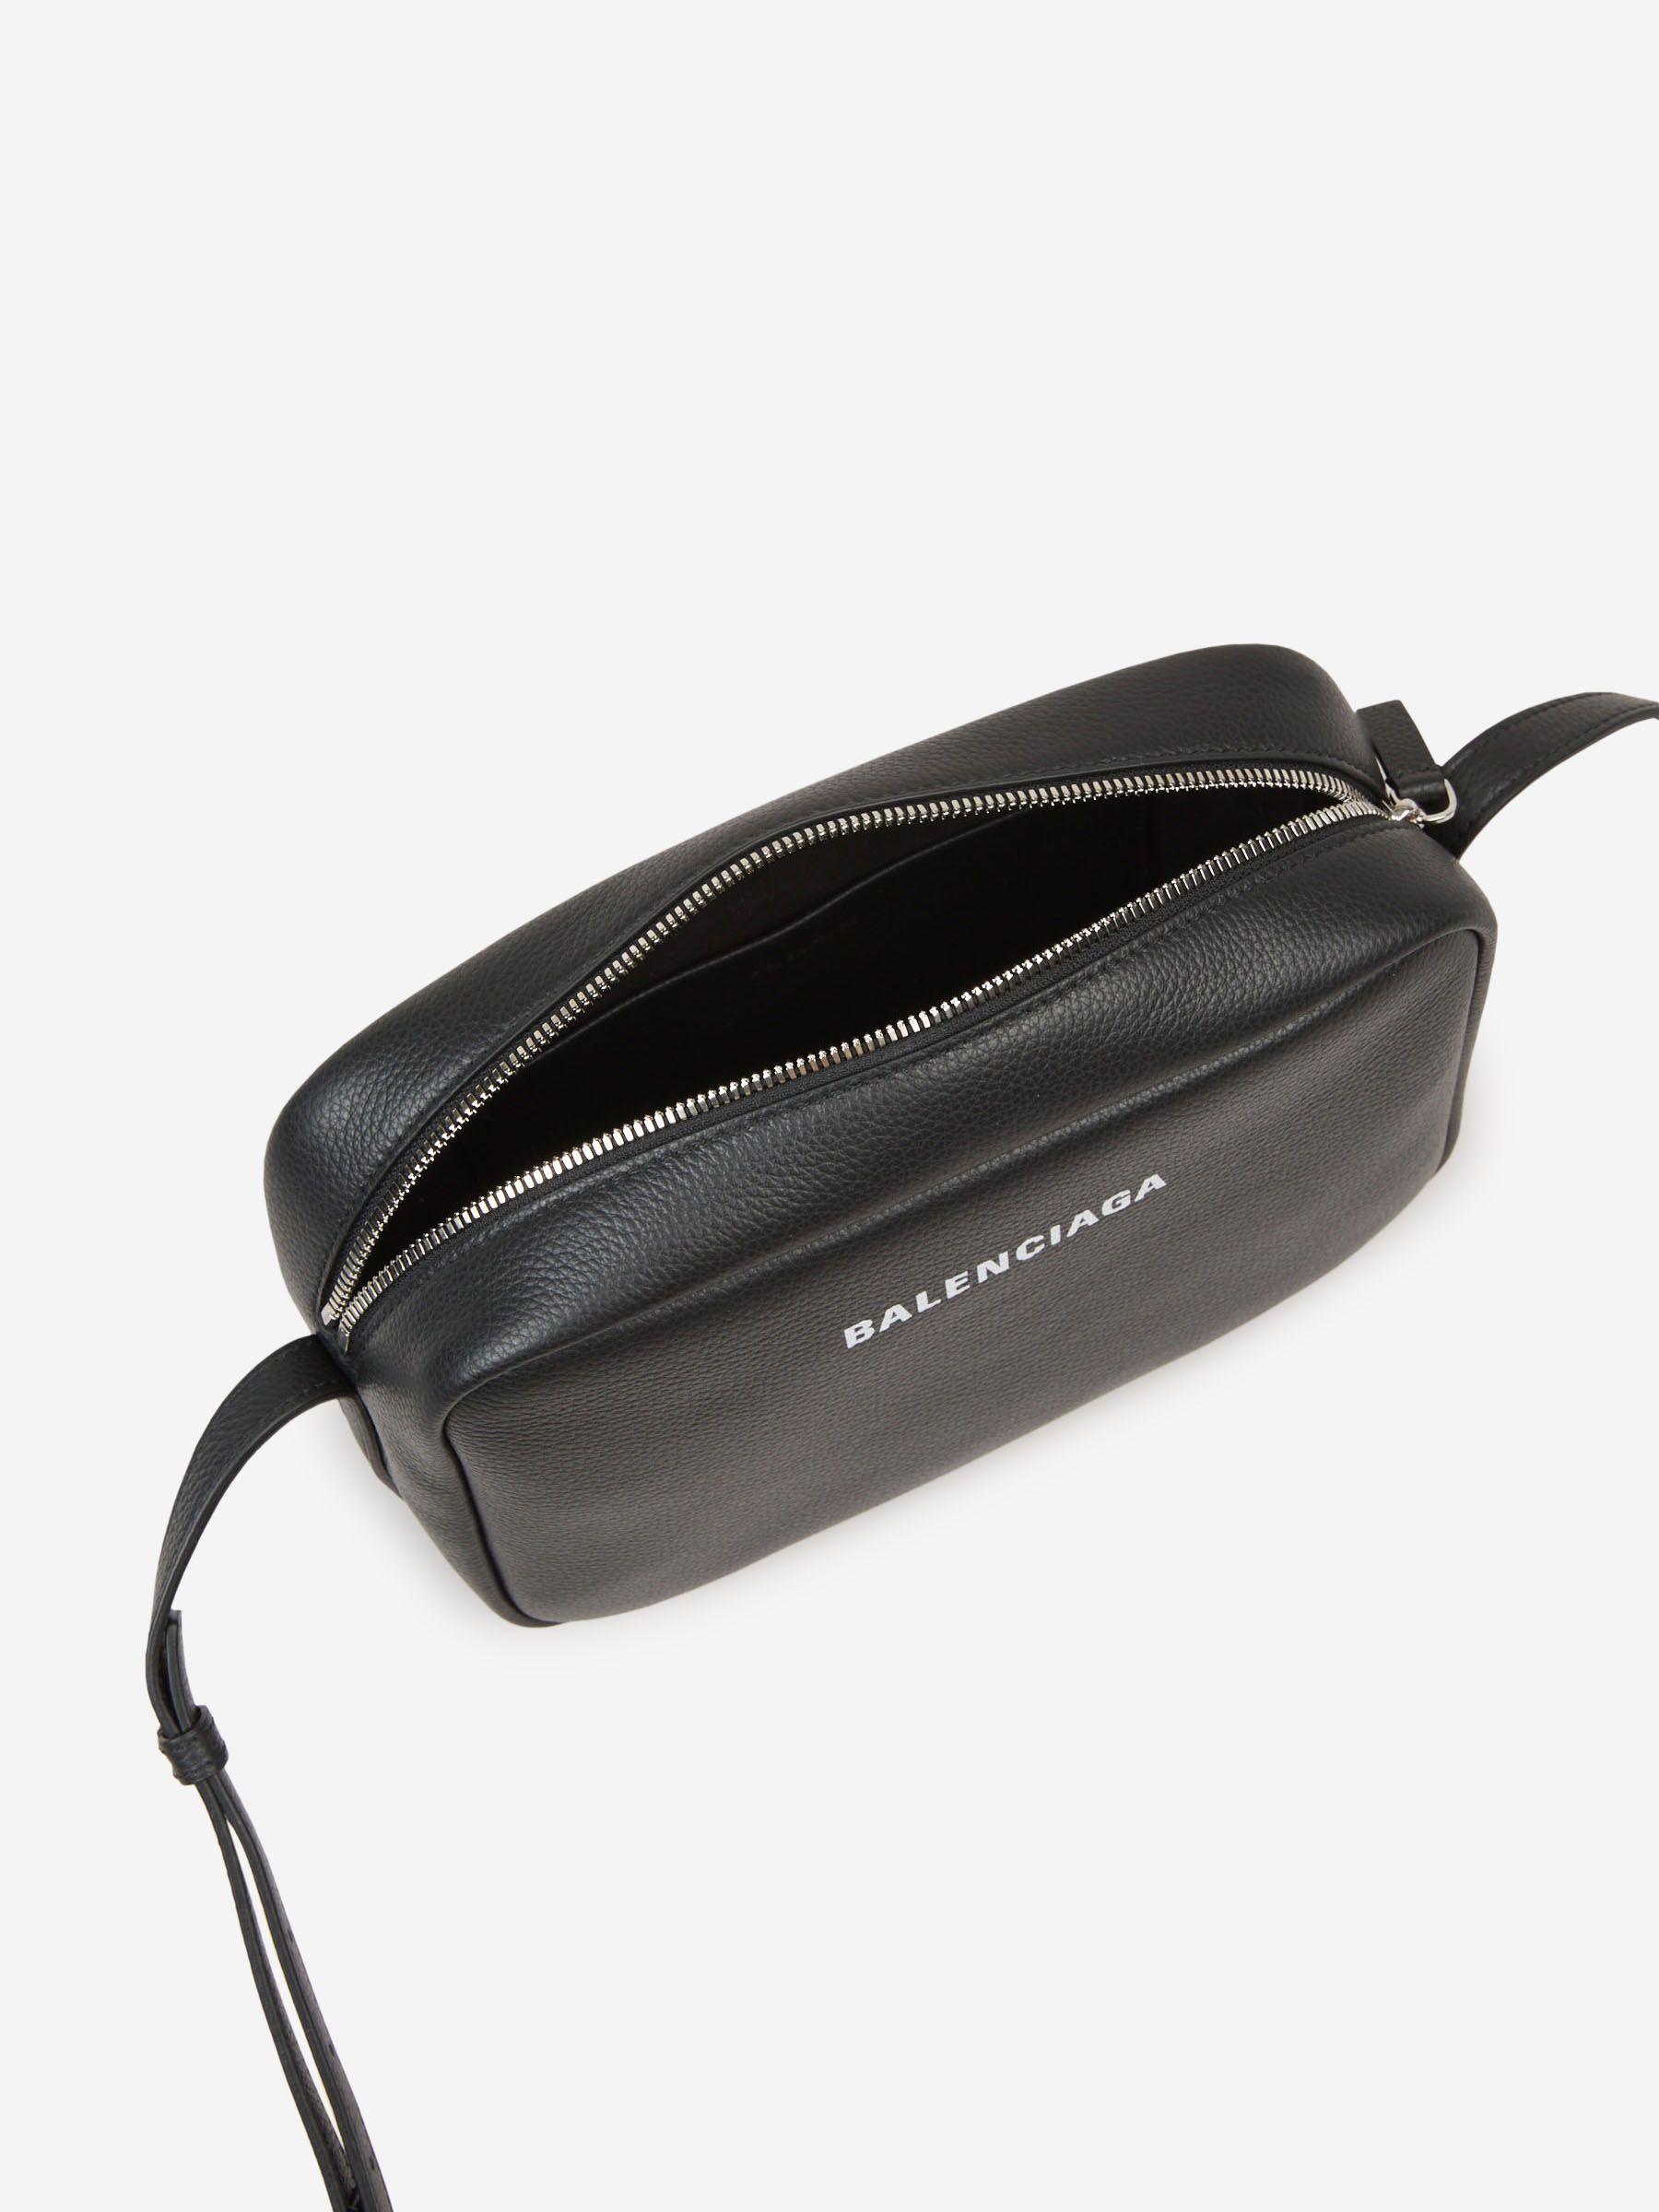 Balenciaga - Women's Everyday Small Camera Bag Black - Calfskin